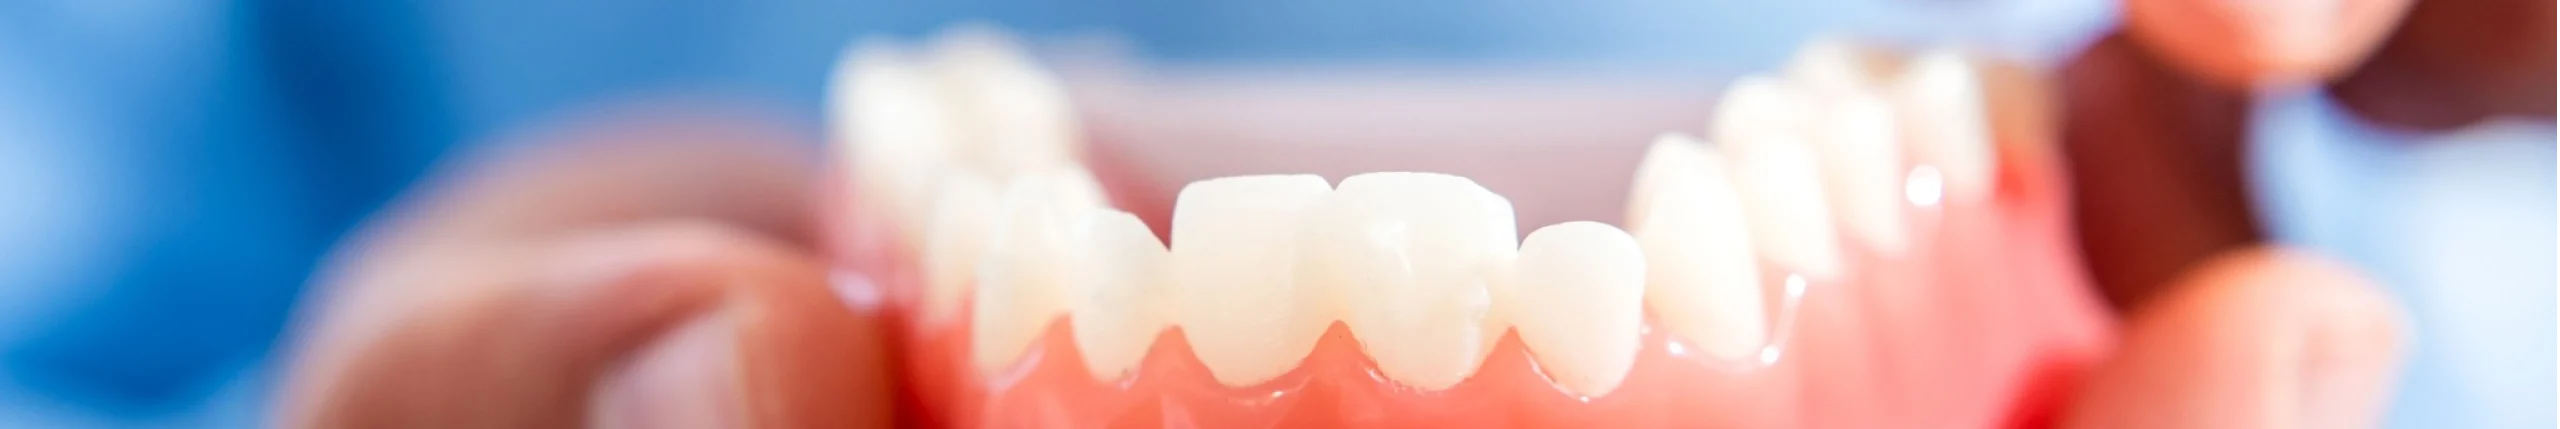 Malocclusions dentaires au Cabinet d'Orthodontie du Dr OHAYON